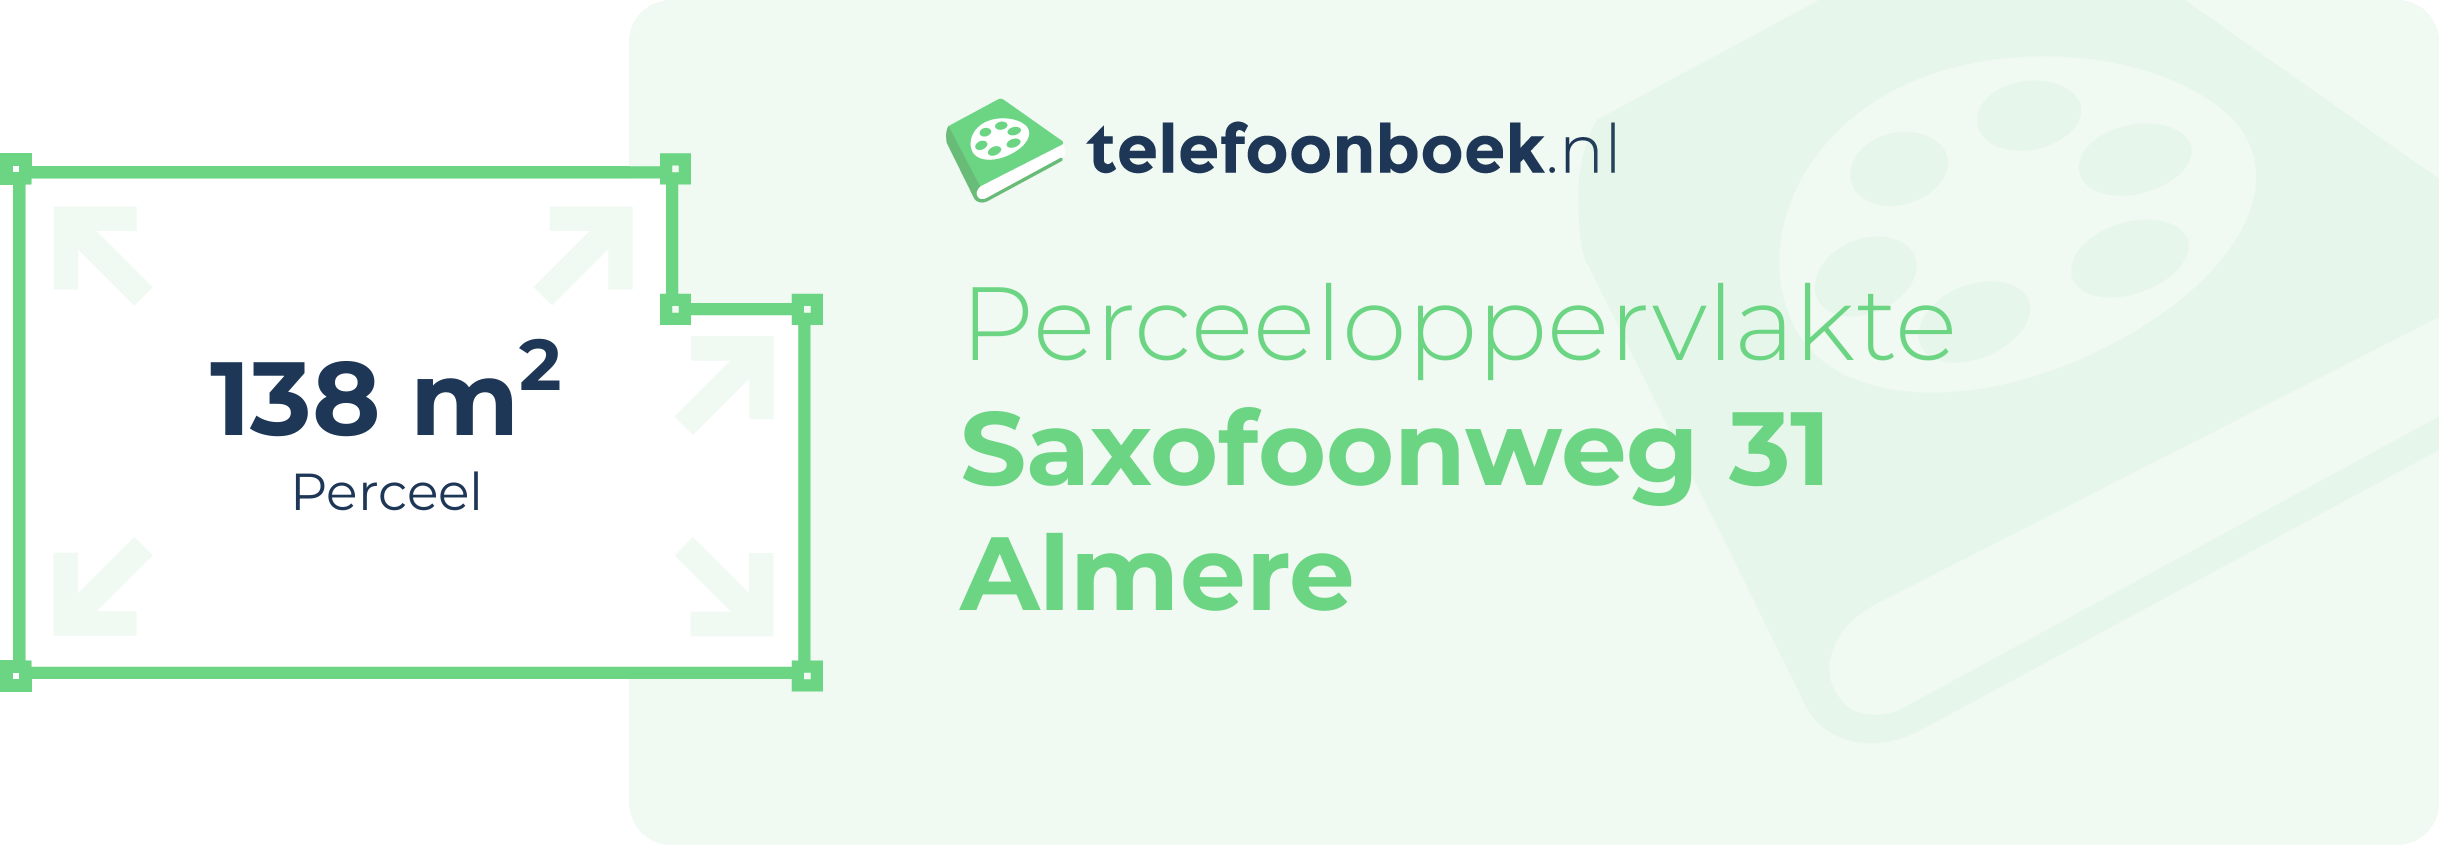 Perceeloppervlakte Saxofoonweg 31 Almere